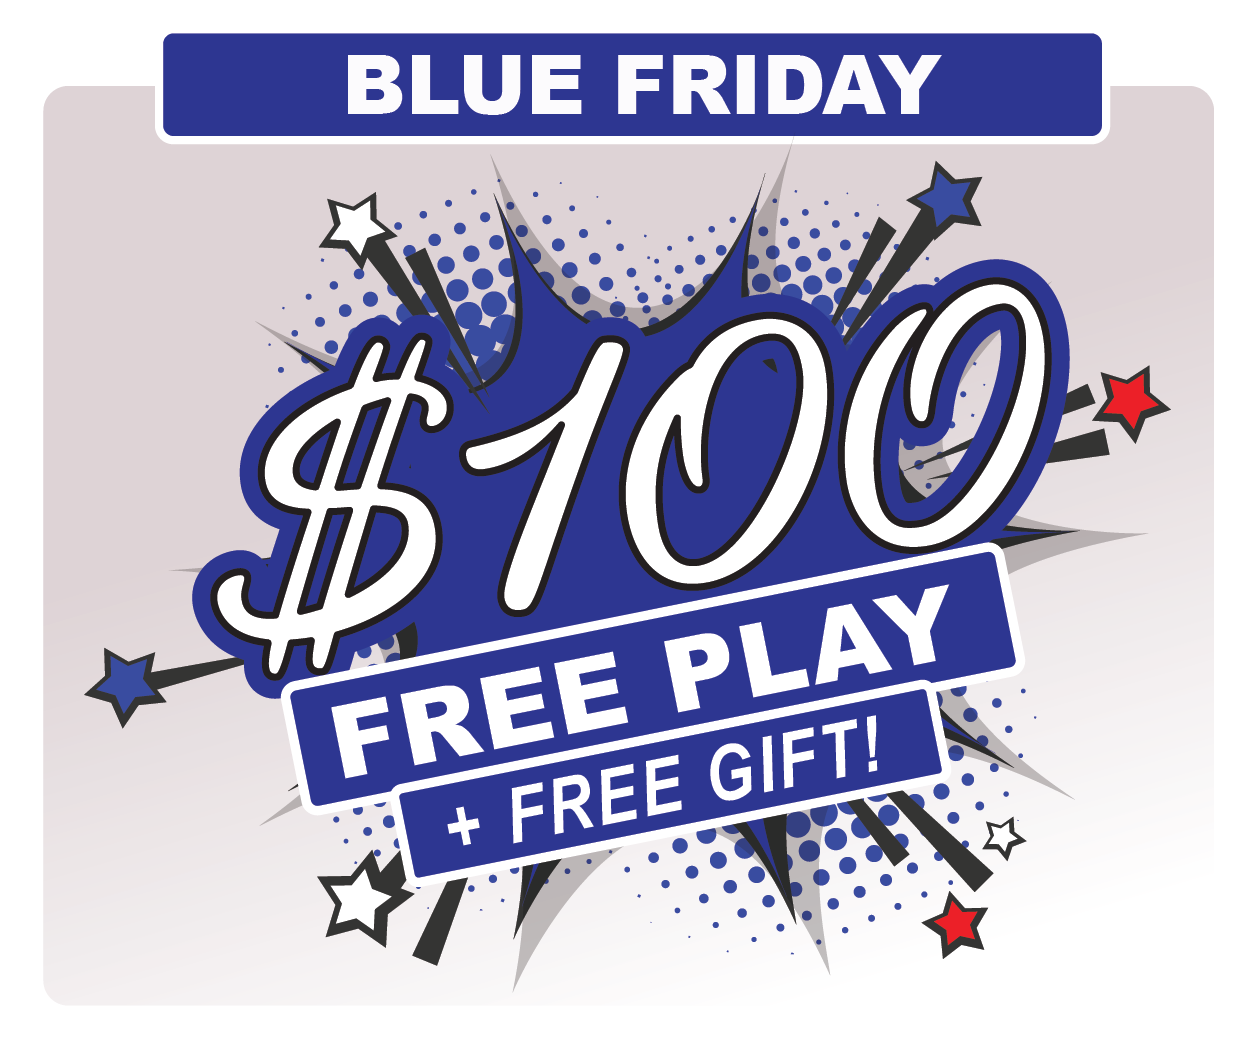 Play+ Casinos, 🎁 Claim $100 Free